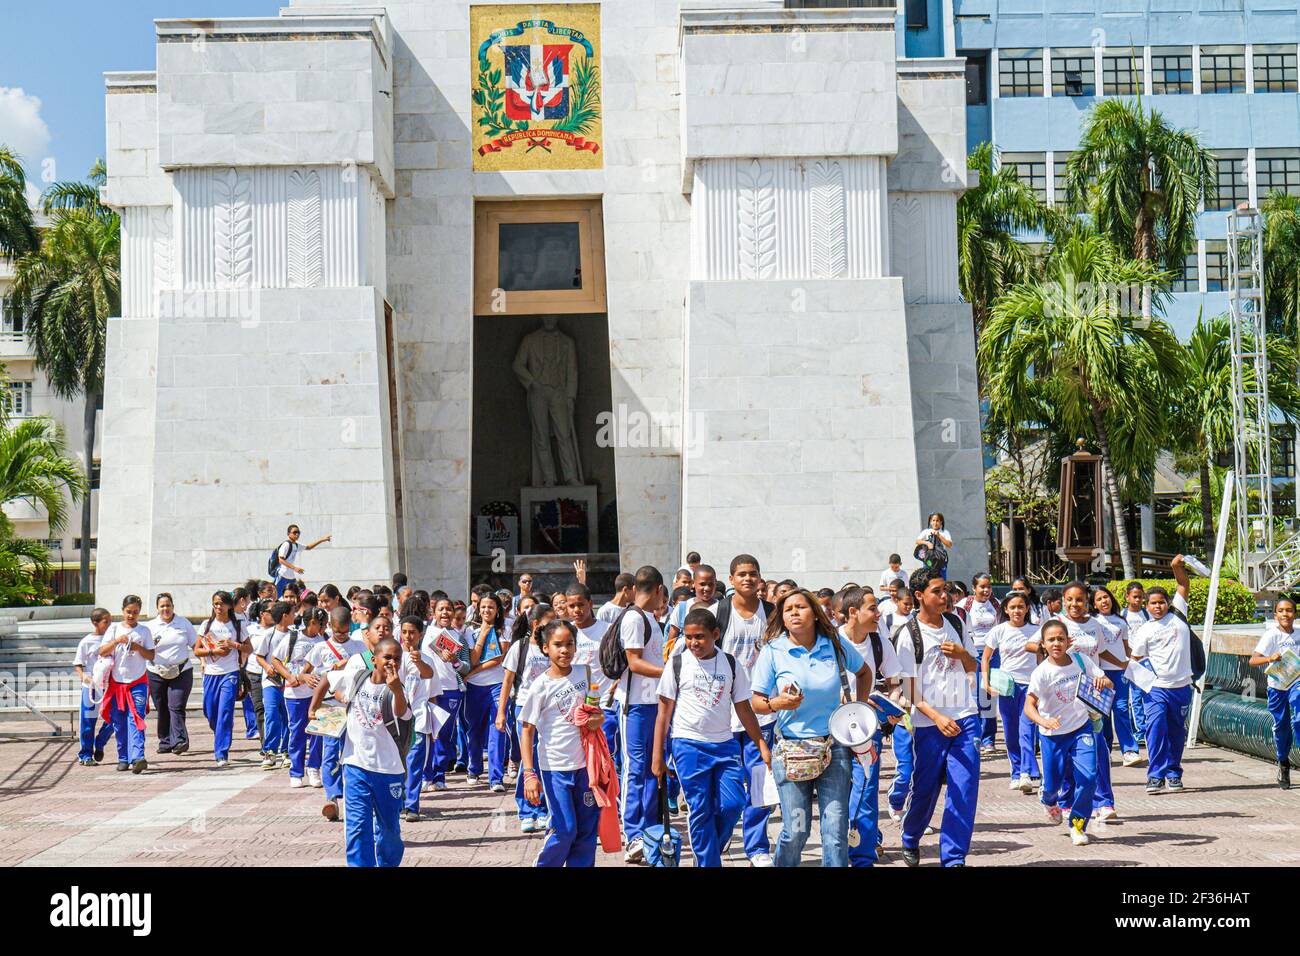 Santo Domingo Repubblica Dominicana, Ciudad Colonial Parque Independencia, altare de la Patria eroi monumento, ispanico studenti neri ragazzi ragazze Foto Stock